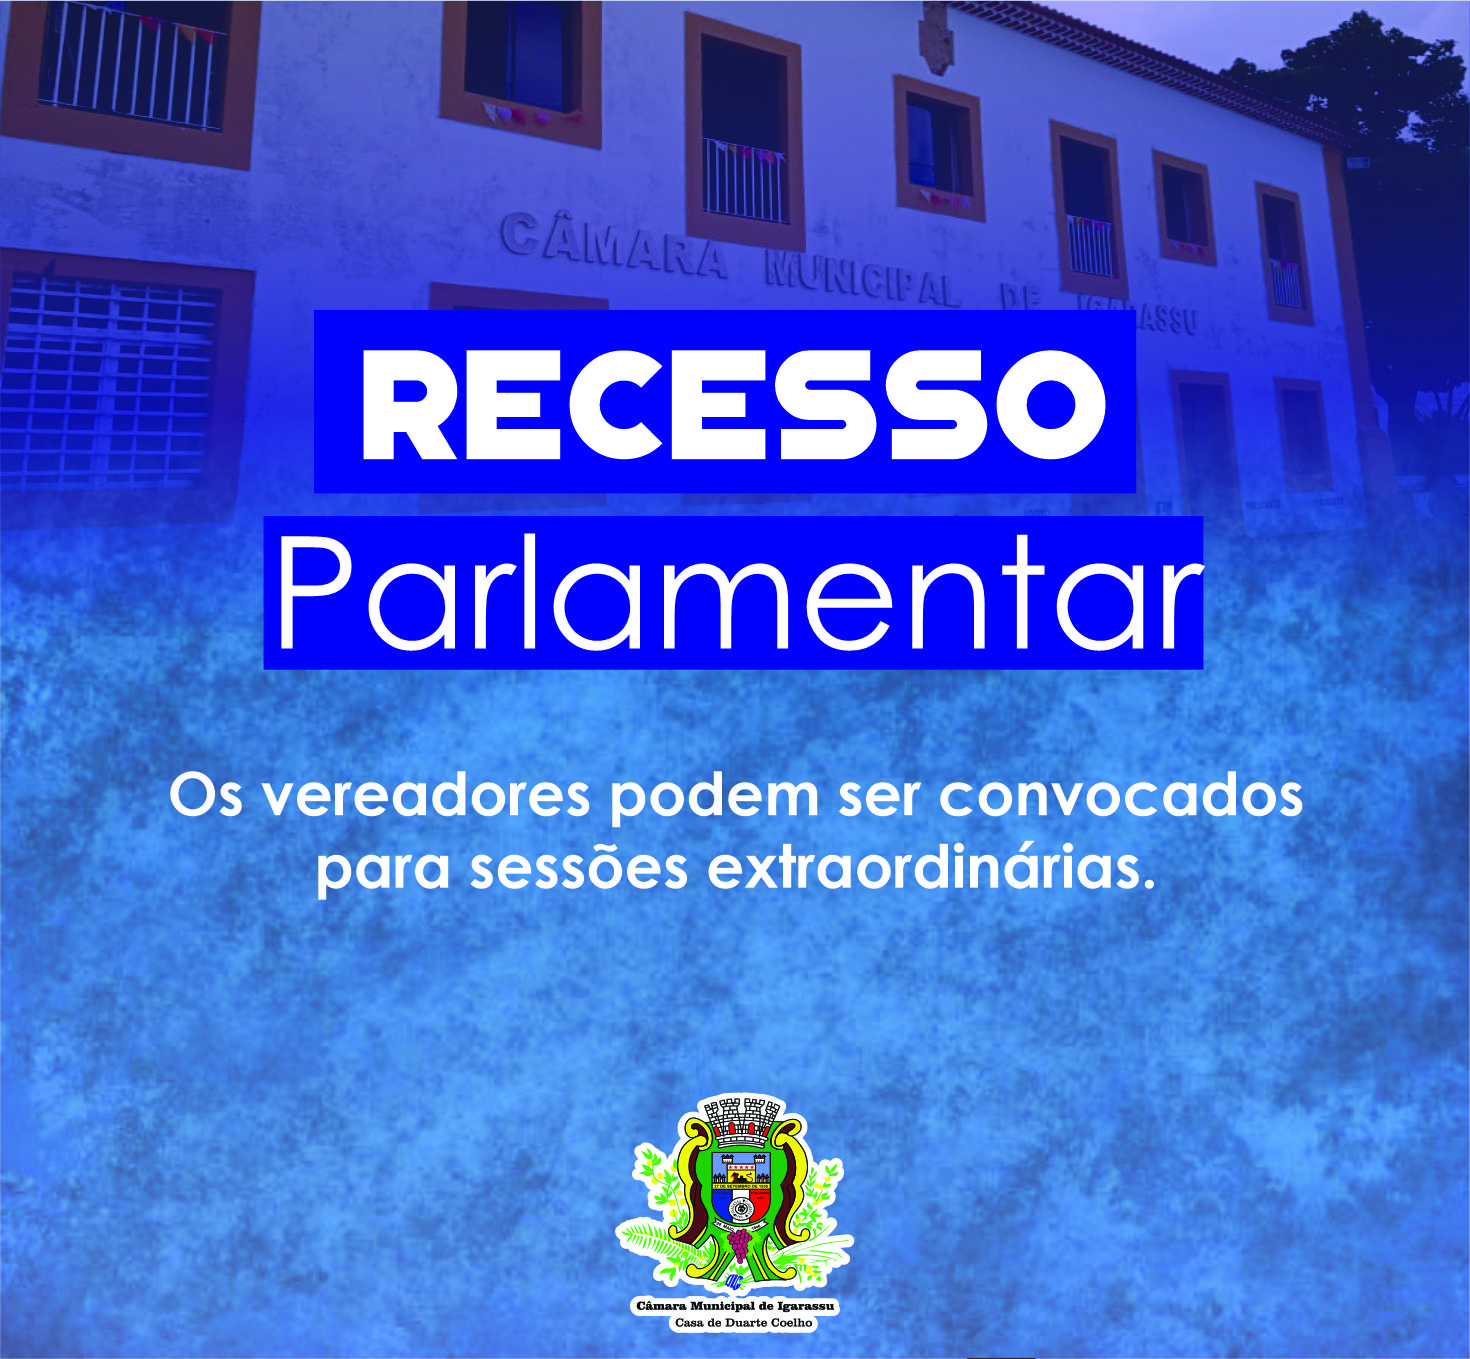 Câmara de Igarassu entra em recesso parlamentar